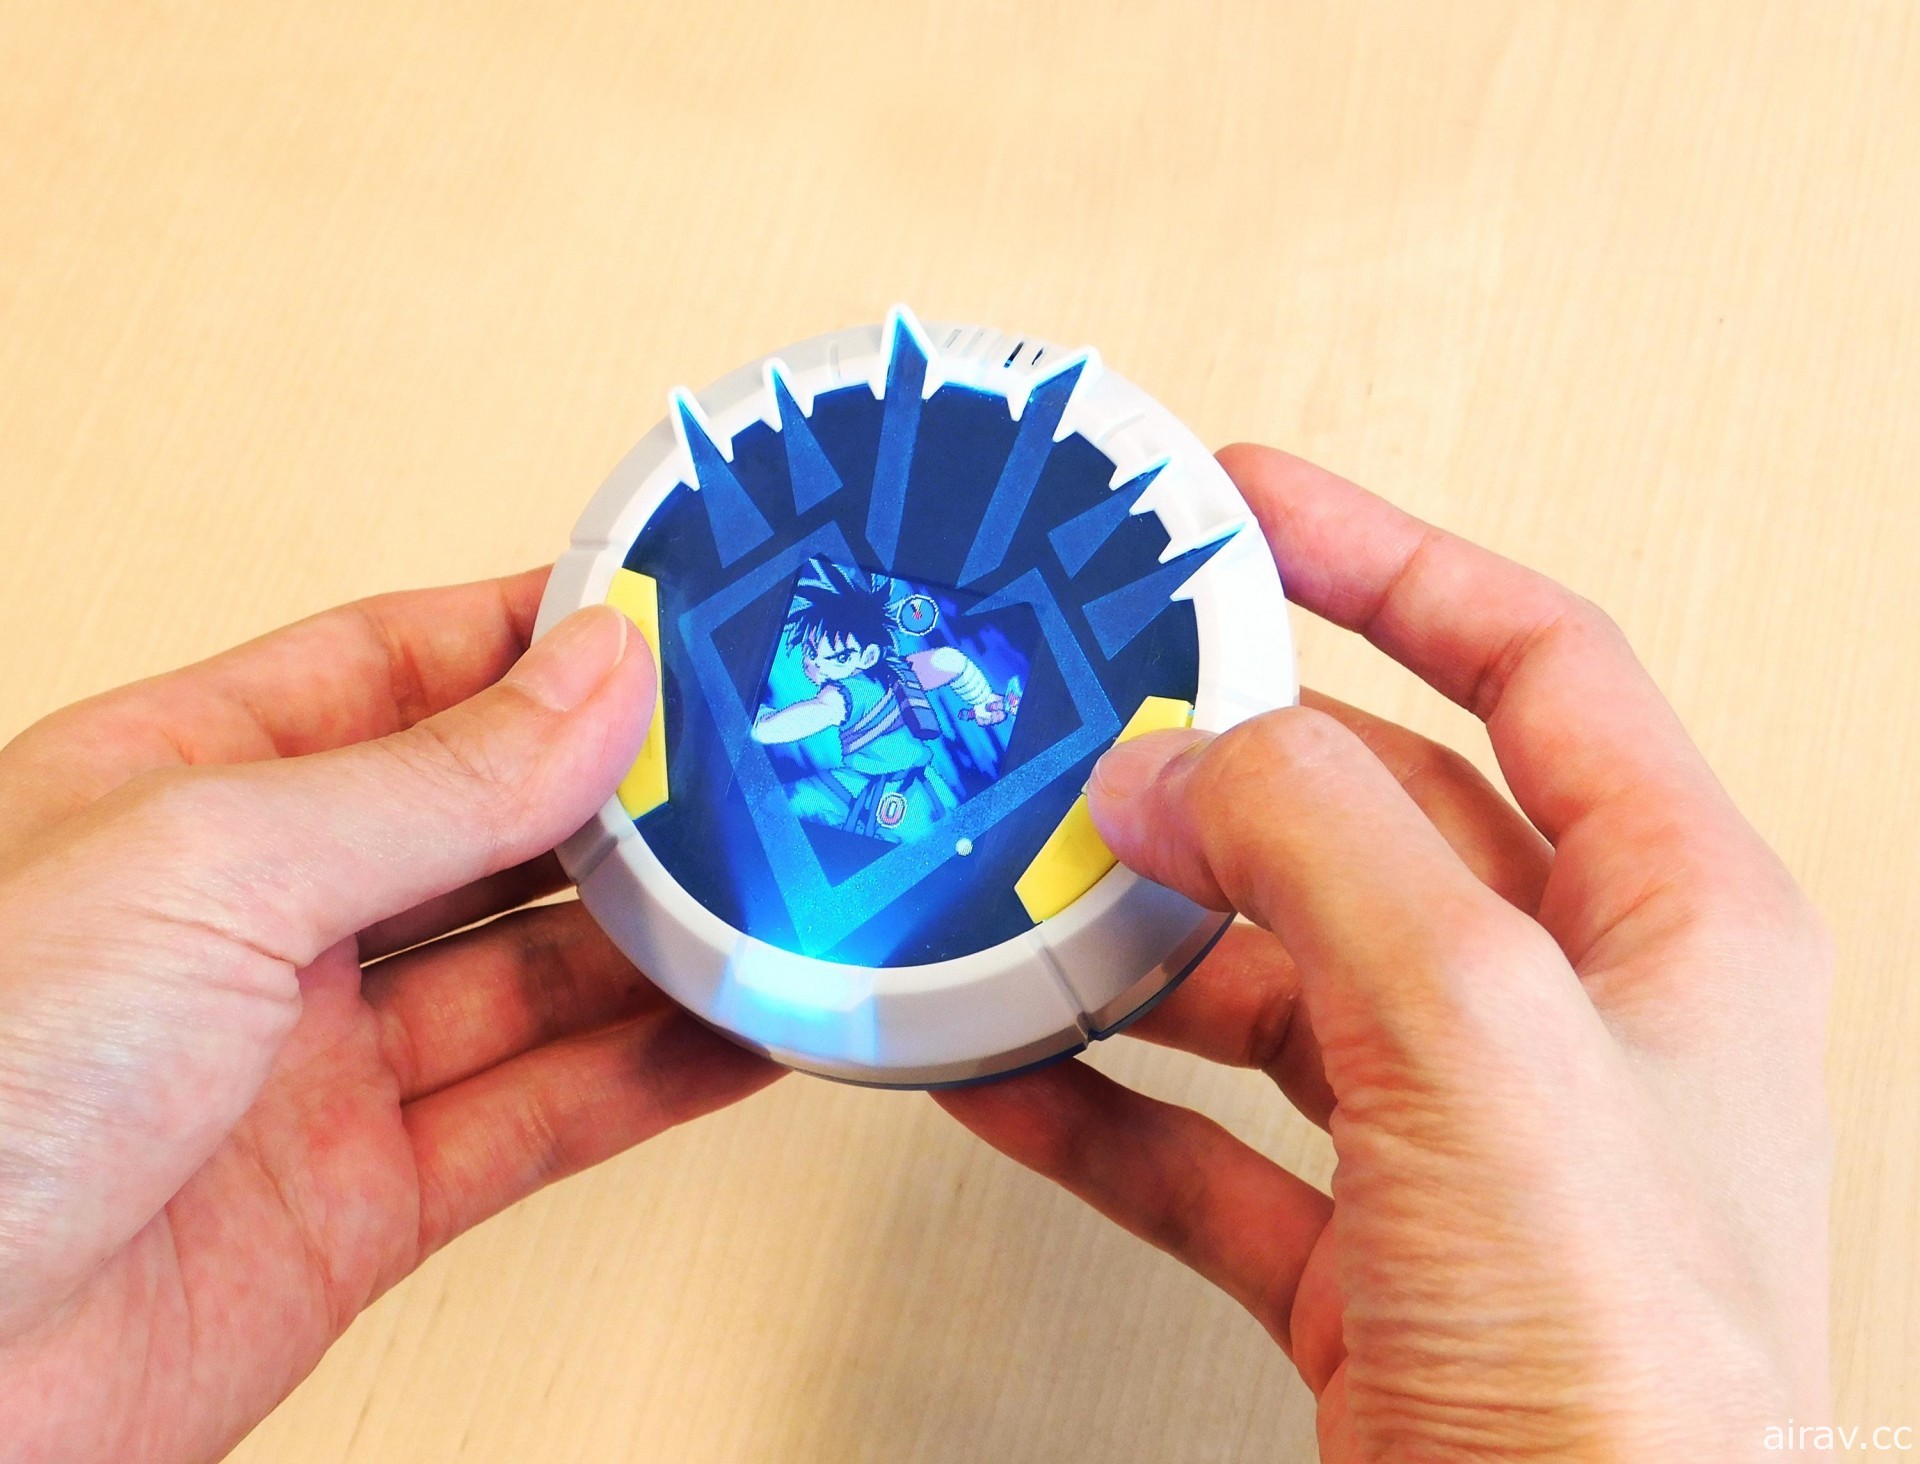 《勇者斗恶龙 达伊的大冒险》将推出“龙纹”造型的随身液晶电子玩具